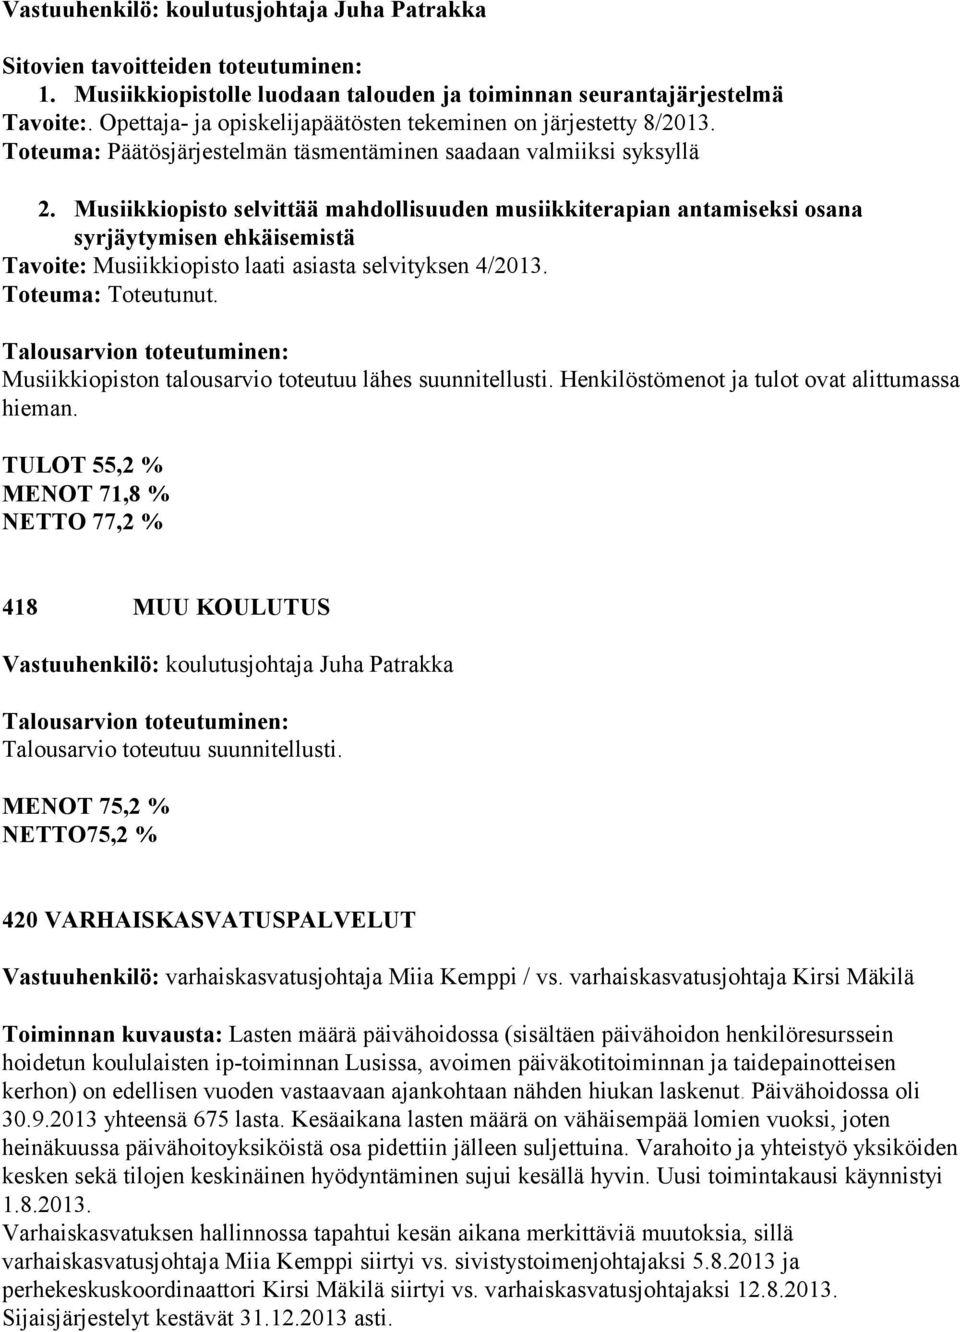 Musiikkiopisto selvittää mahdollisuuden musiikkiterapian antamiseksi osana syrjäytymisen ehkäisemistä Tavoite: Musiikkiopisto laati asiasta selvityksen 4/2013. Toteuma: Toteutunut.